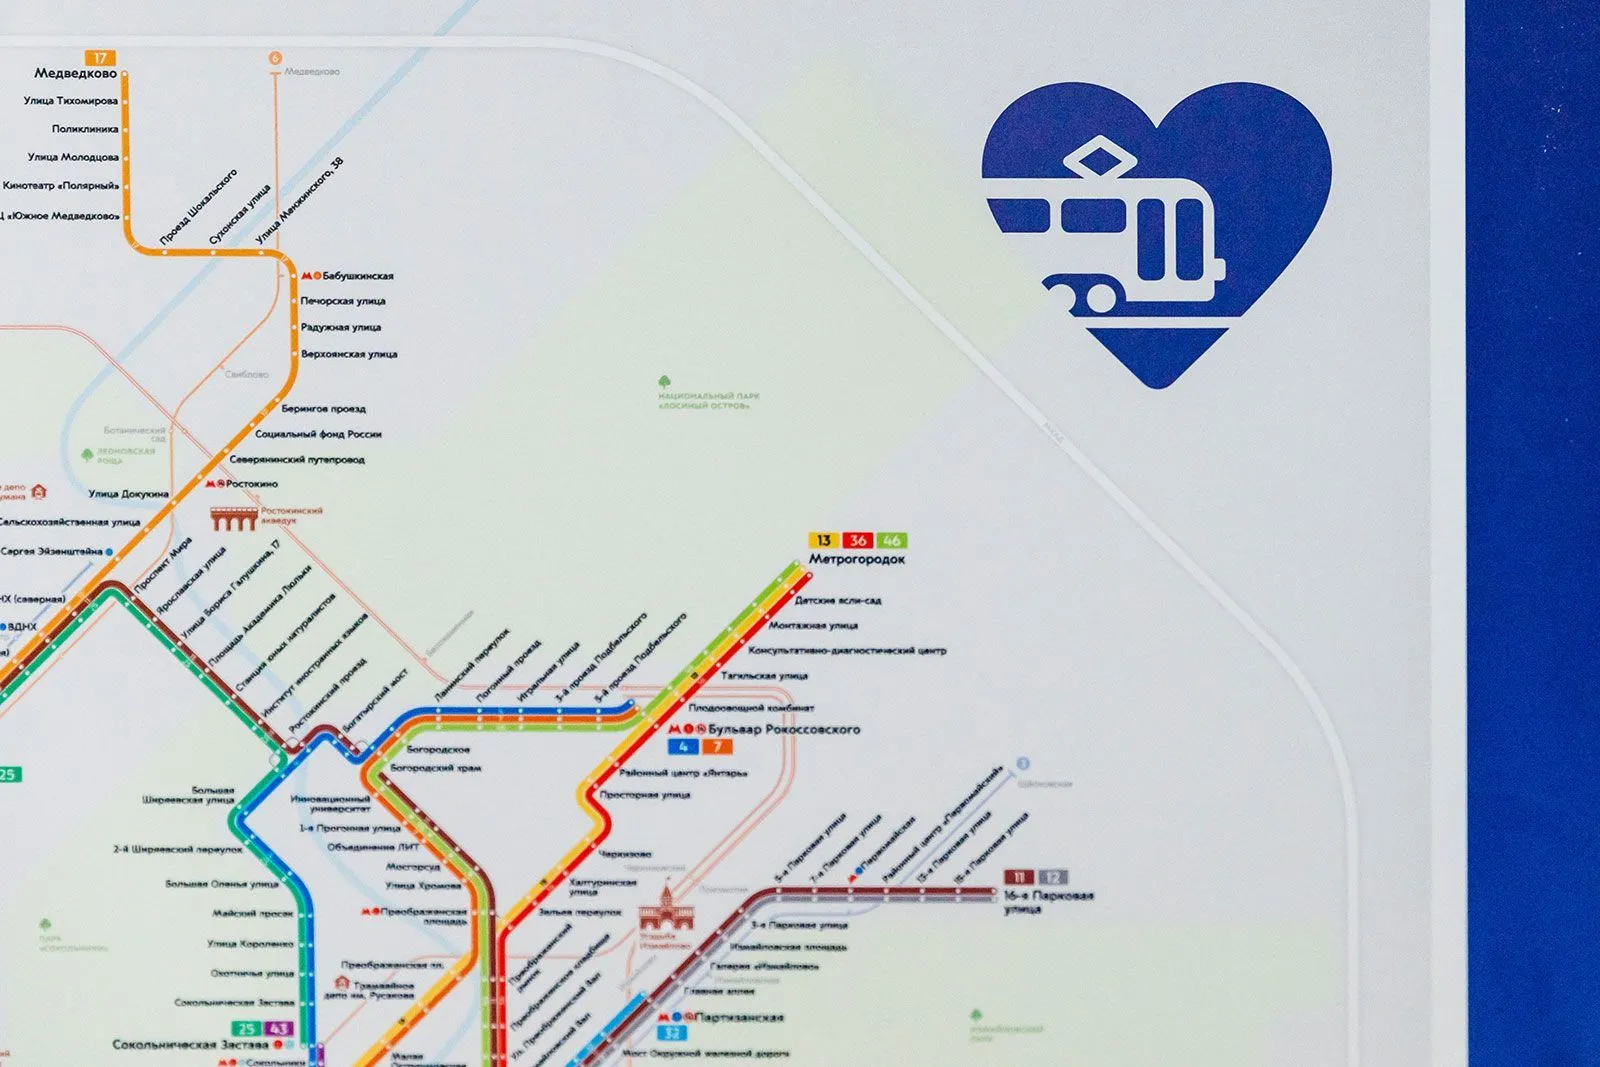 В Москве появилась новая схема трамвайной сети